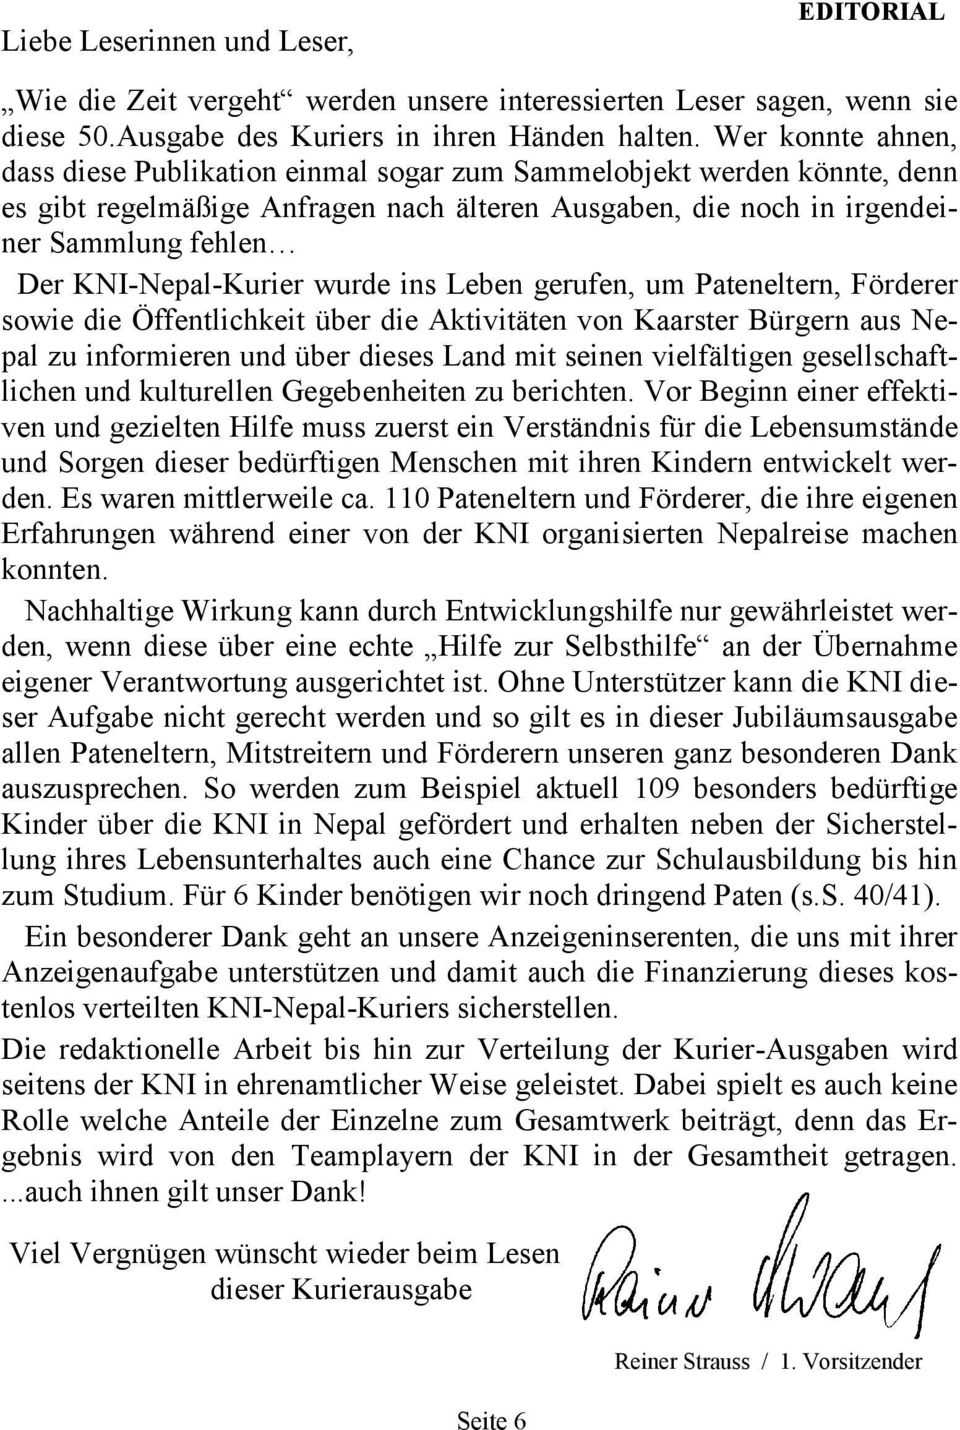 KNI-Nepal-Kurier wurde ins Leben gerufen, um Pateneltern, Förderer sowie die Öffentlichkeit über die Aktivitäten von Kaarster Bürgern aus Nepal zu informieren und über dieses Land mit seinen